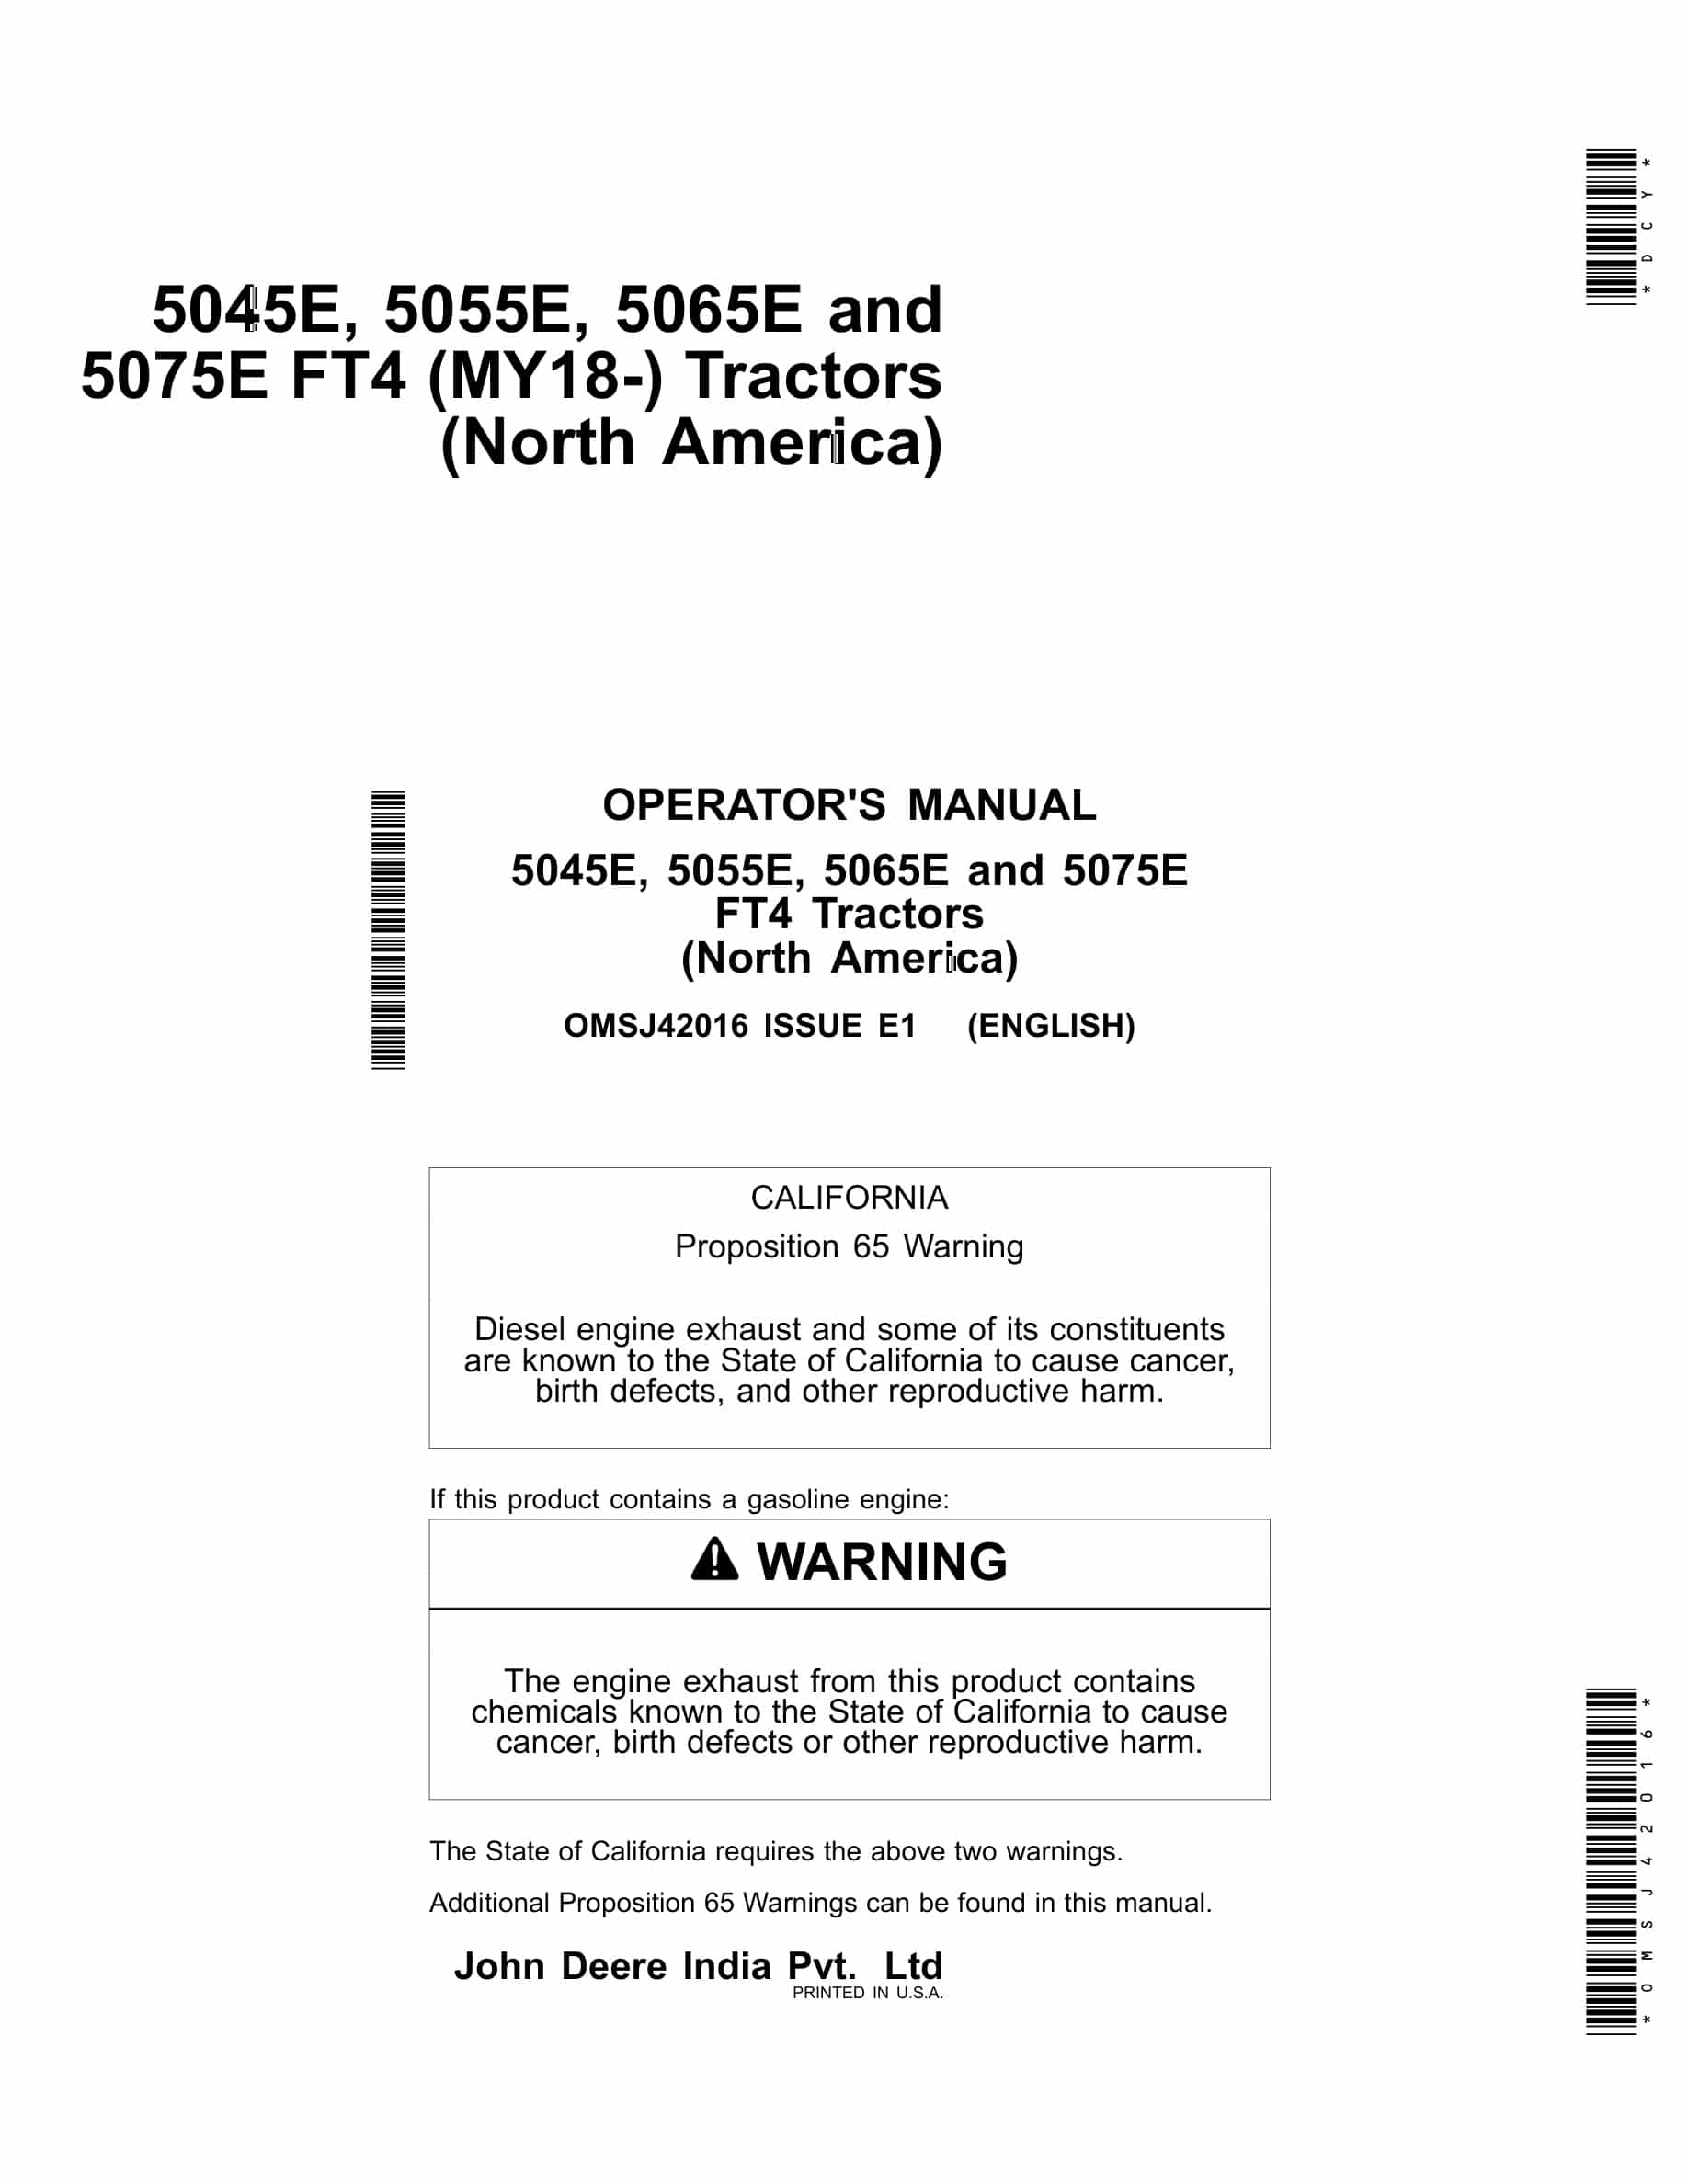 John Deere 5045E, 5055E, 5065E and 5075E FT4 Tractor Operator Manual OMSJ42016-1